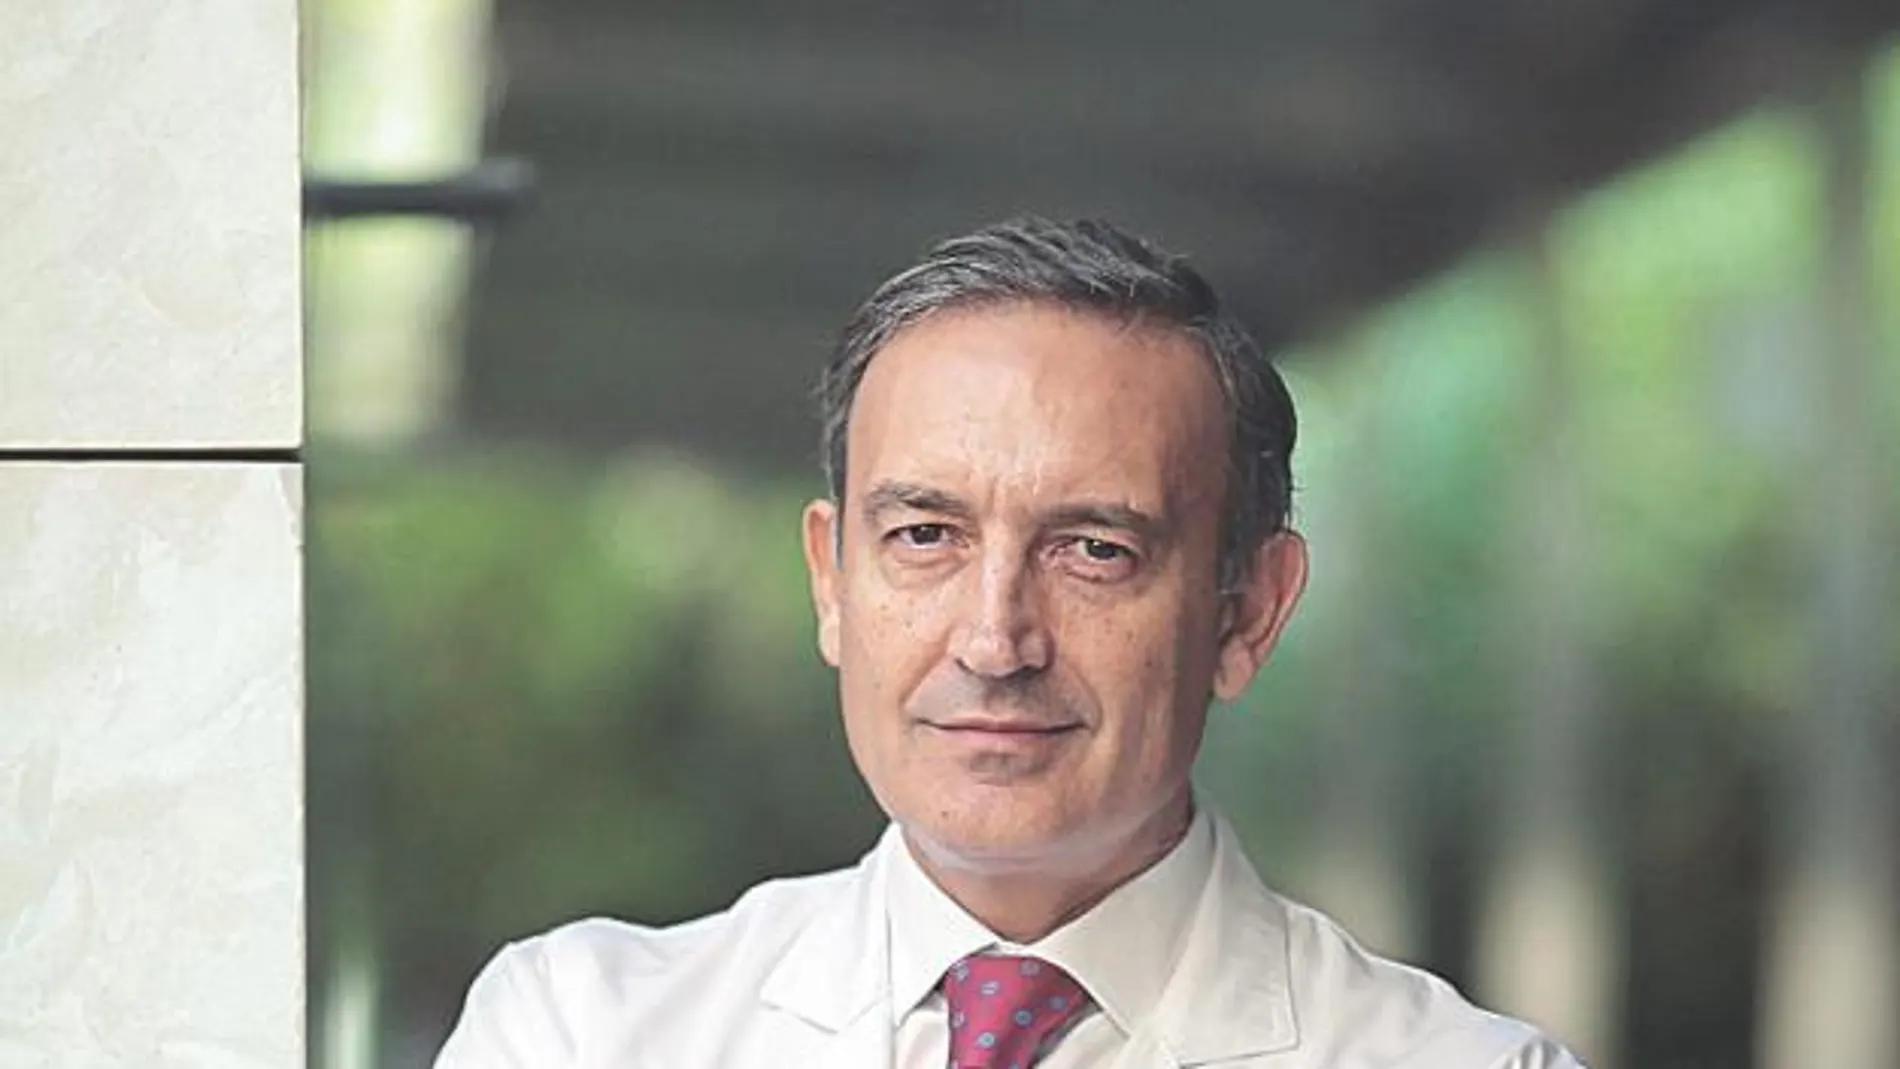 Bernardino Miñana / Co-director del Departamento de Urología Clínica Universidad de Navarra